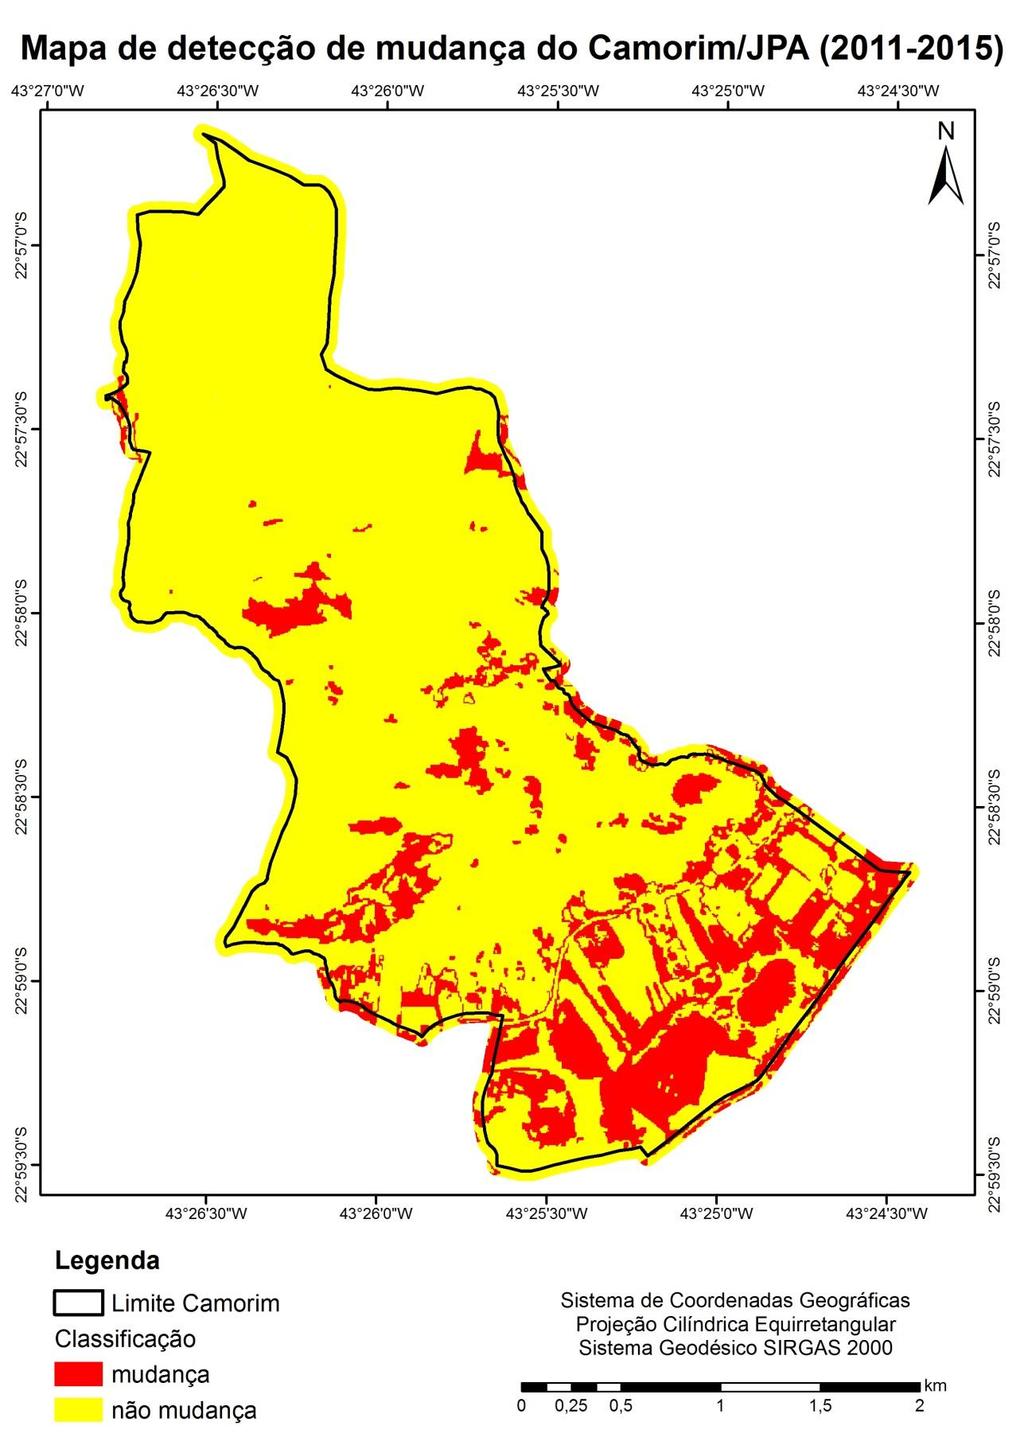 Figura 8 Mapa de detecção de mudança no bairro do Camorim/JPA entre os anos de 2011 e 2015. 3.